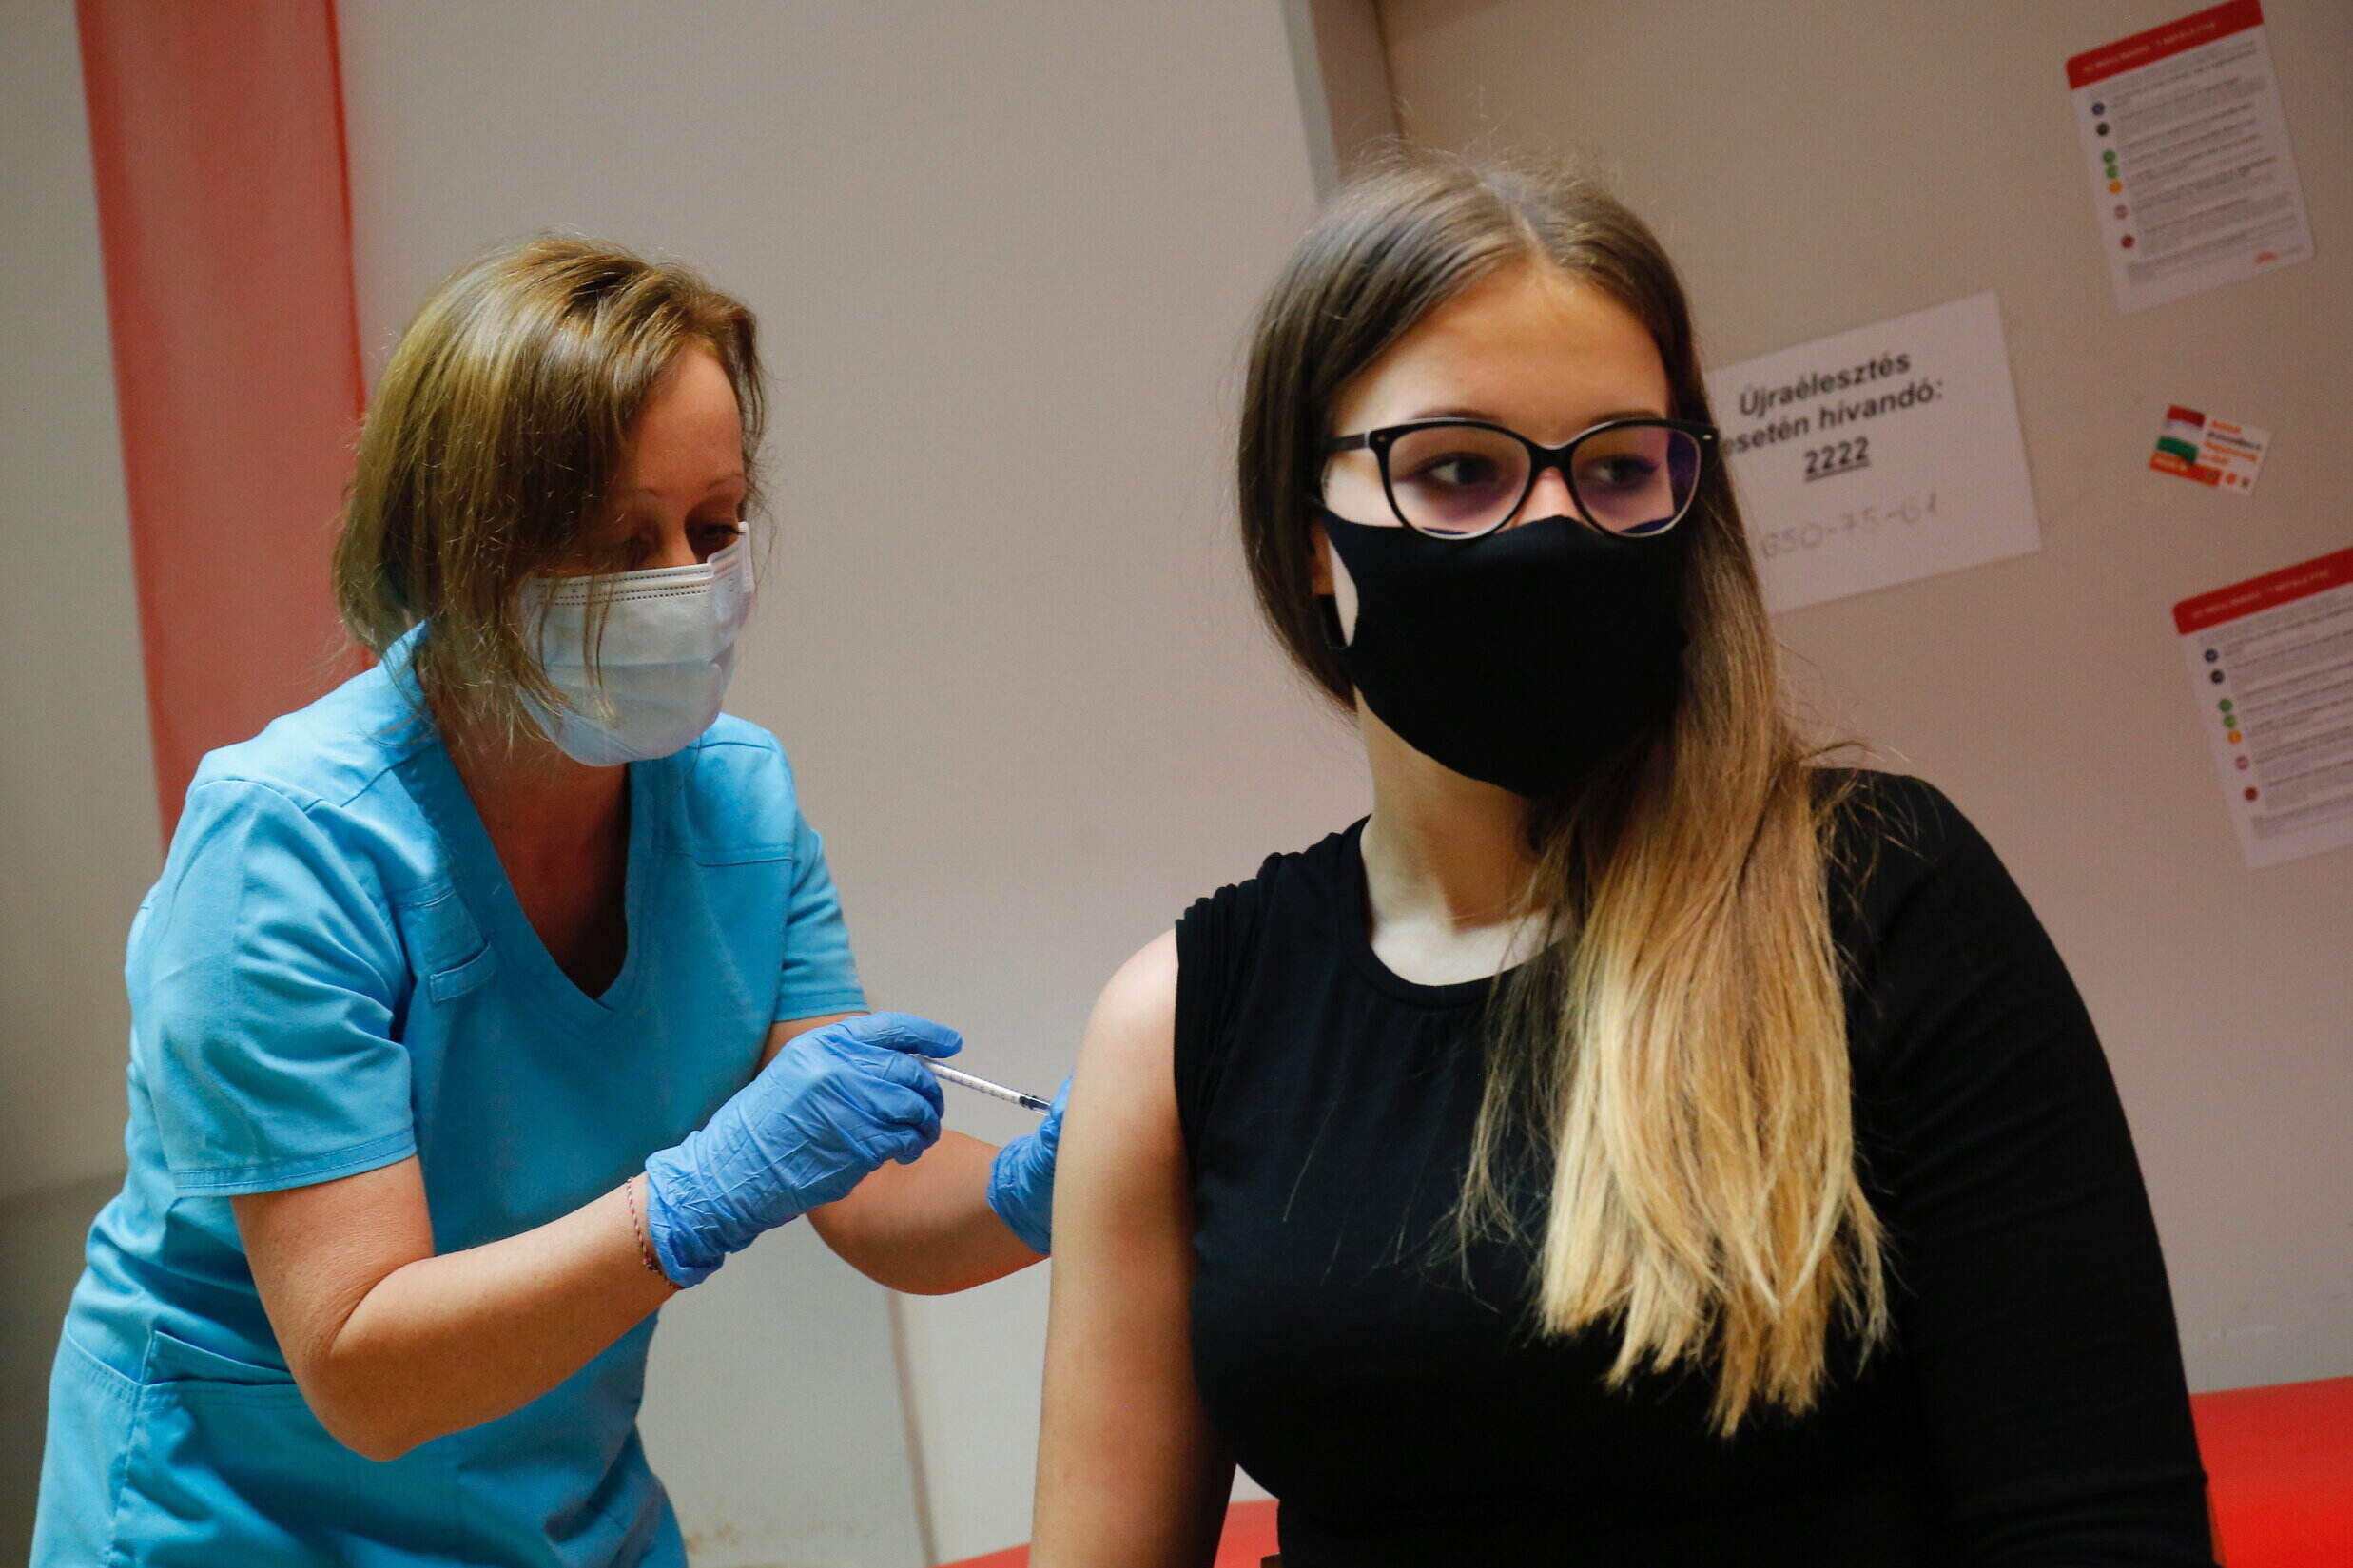 Impfung von Teenagern in Ungarn